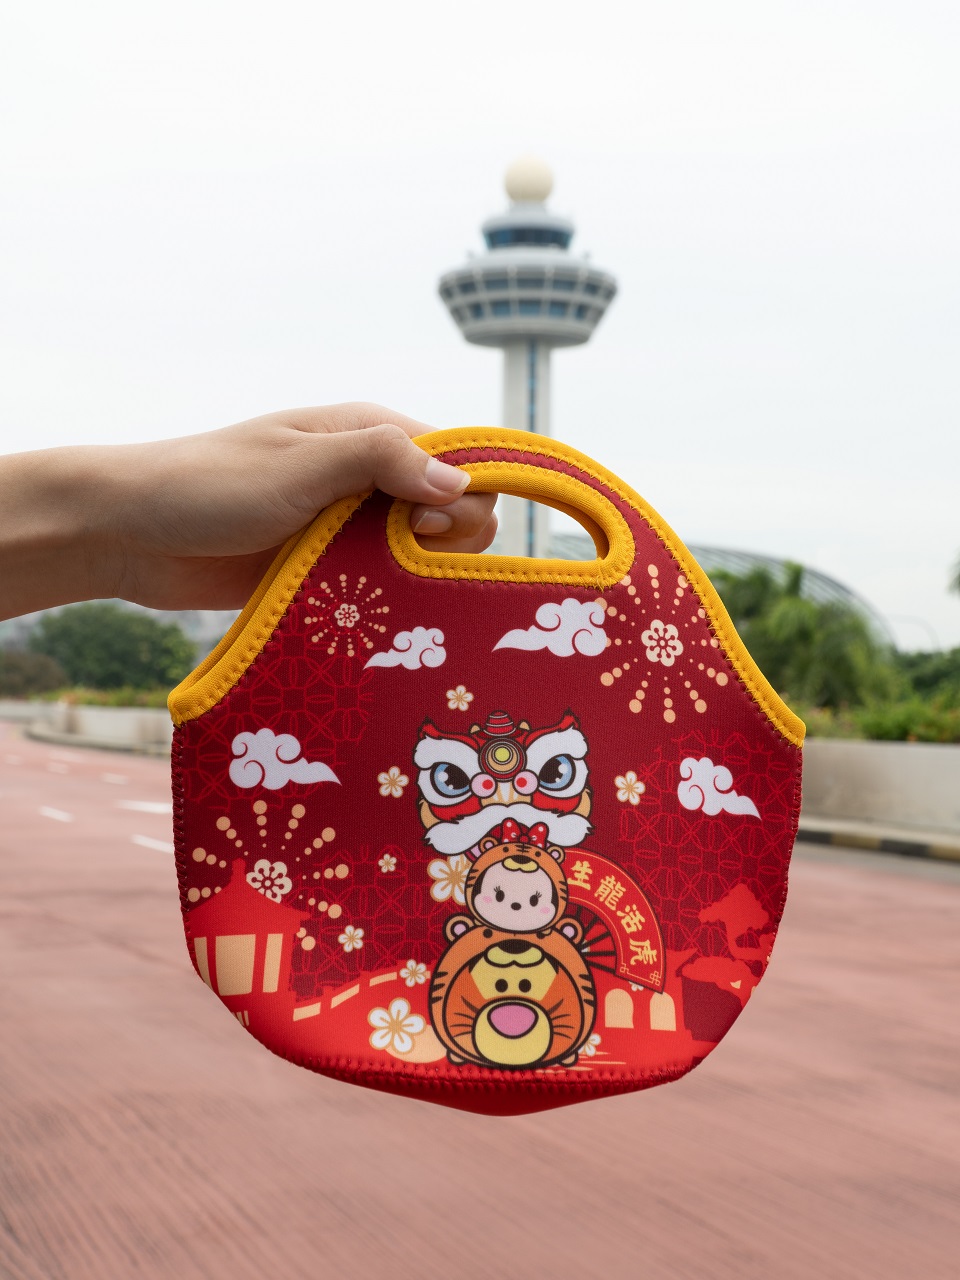 Disney Tsum Tsum mandarin orange bag from Changi Airport